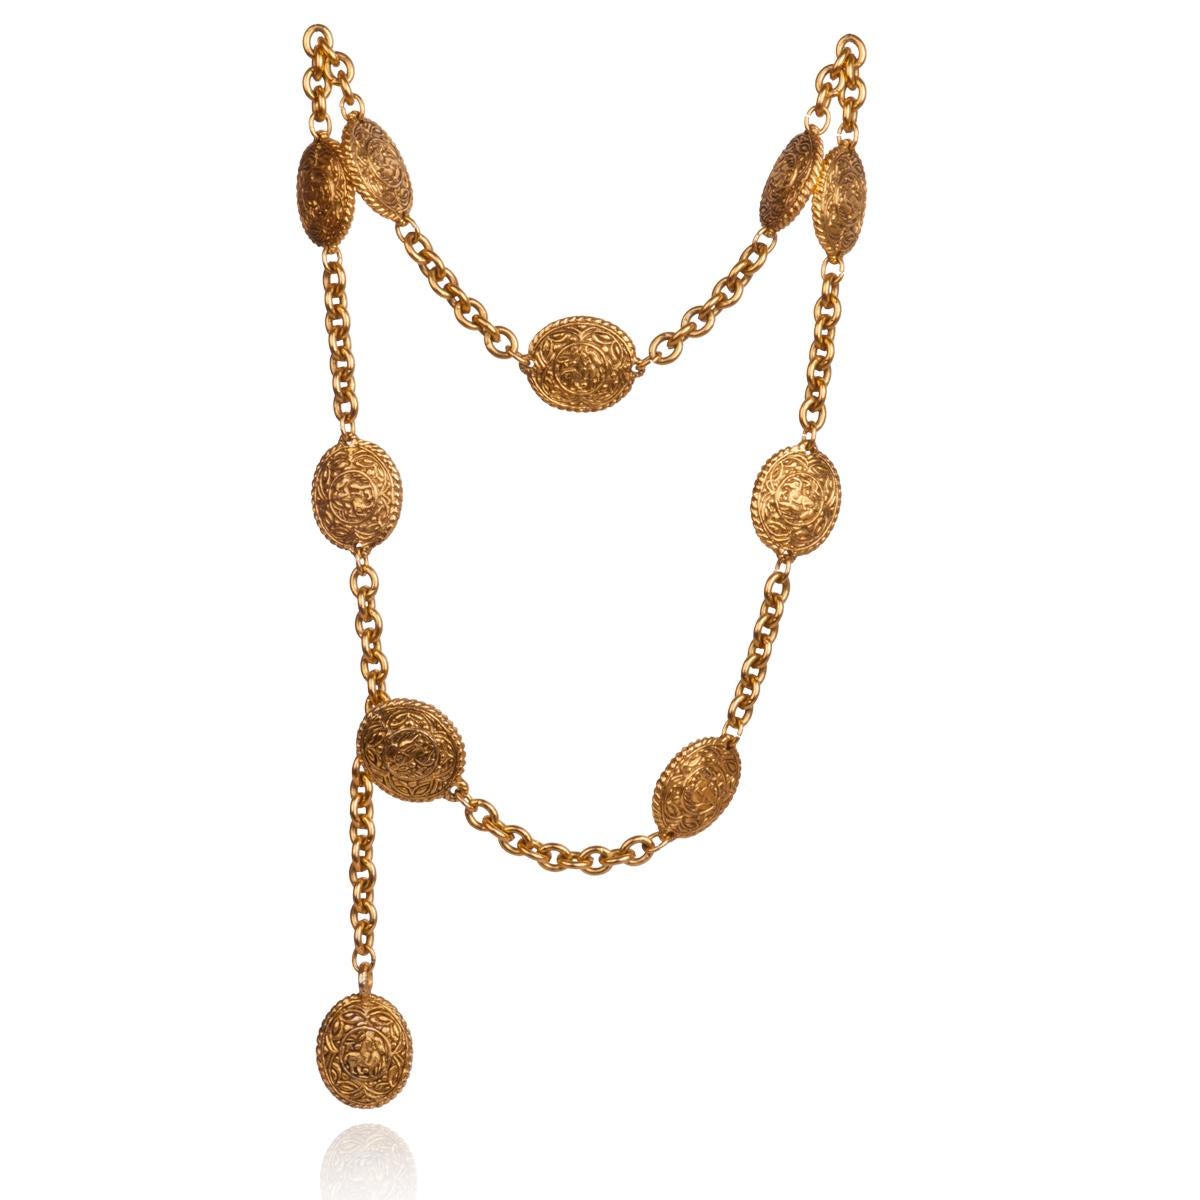 Chanel goldfarbener Gürtel mit Medaillon-Halskette mit Reitmotiv, hergestellt in Frankreich, 1990er Jahre.
Der Gürtel ist gestempelt. Sehr klassisch und alltagstauglich.

Herkunft: Frankreich
Größe: Gesamtlänge 85 cm
Zustand: in ausgezeichnetem